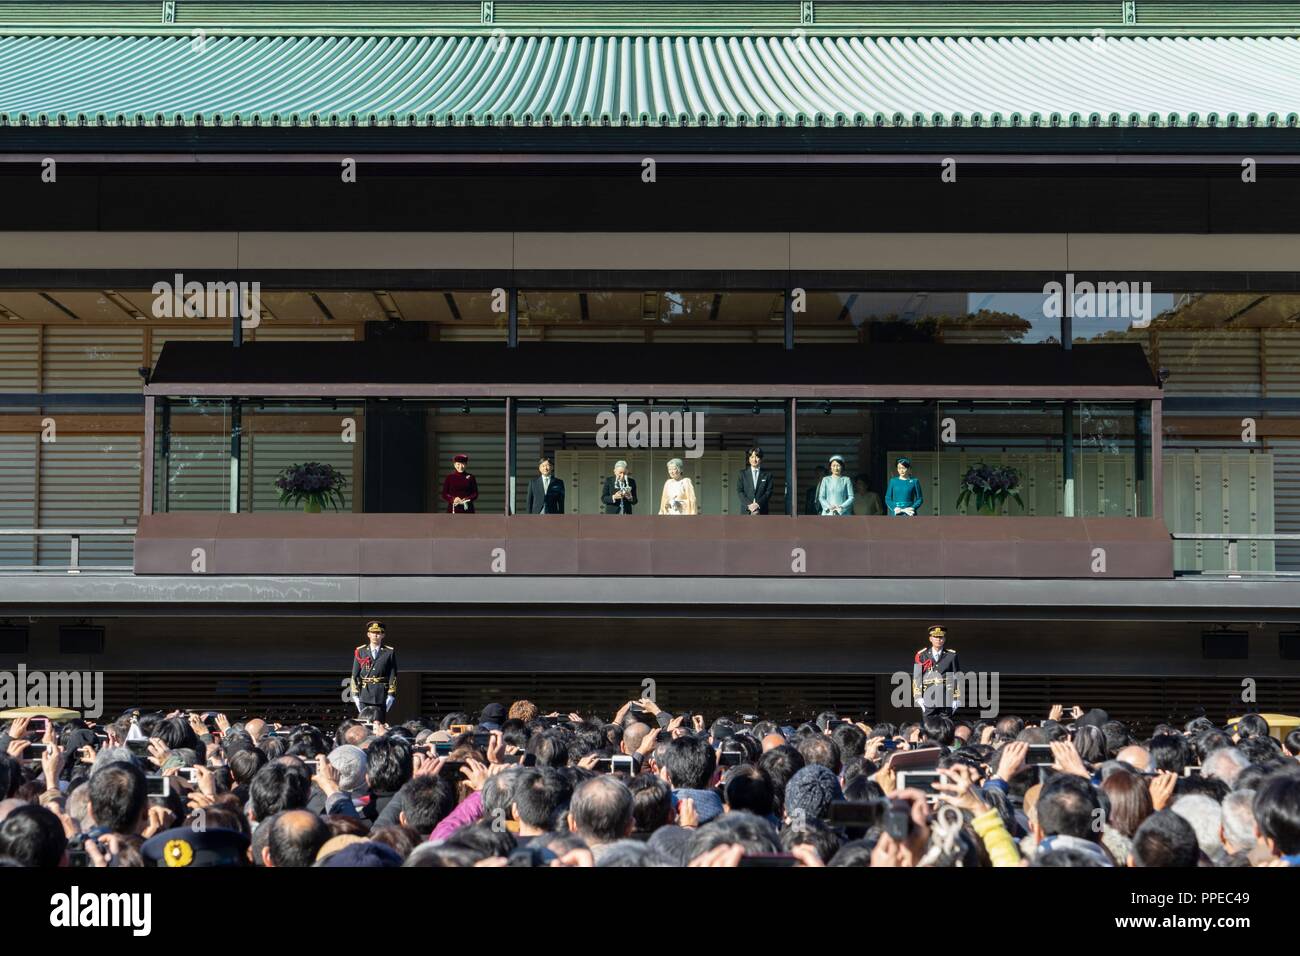 Japan: letzten Geburtstag Rede des japanischen Kaisers Akihito auf der Tokyo Imperial Palace. Von links: kronprinzessin Masako, Kronprinz Naruhito, Kaiser Akihito und Kaiserin Michiko, Prinz Fumihito, Prinzessin Kiko, Prinzessin Mako. Foto vom 23. Dezember 2017. | Verwendung weltweit Stockfoto